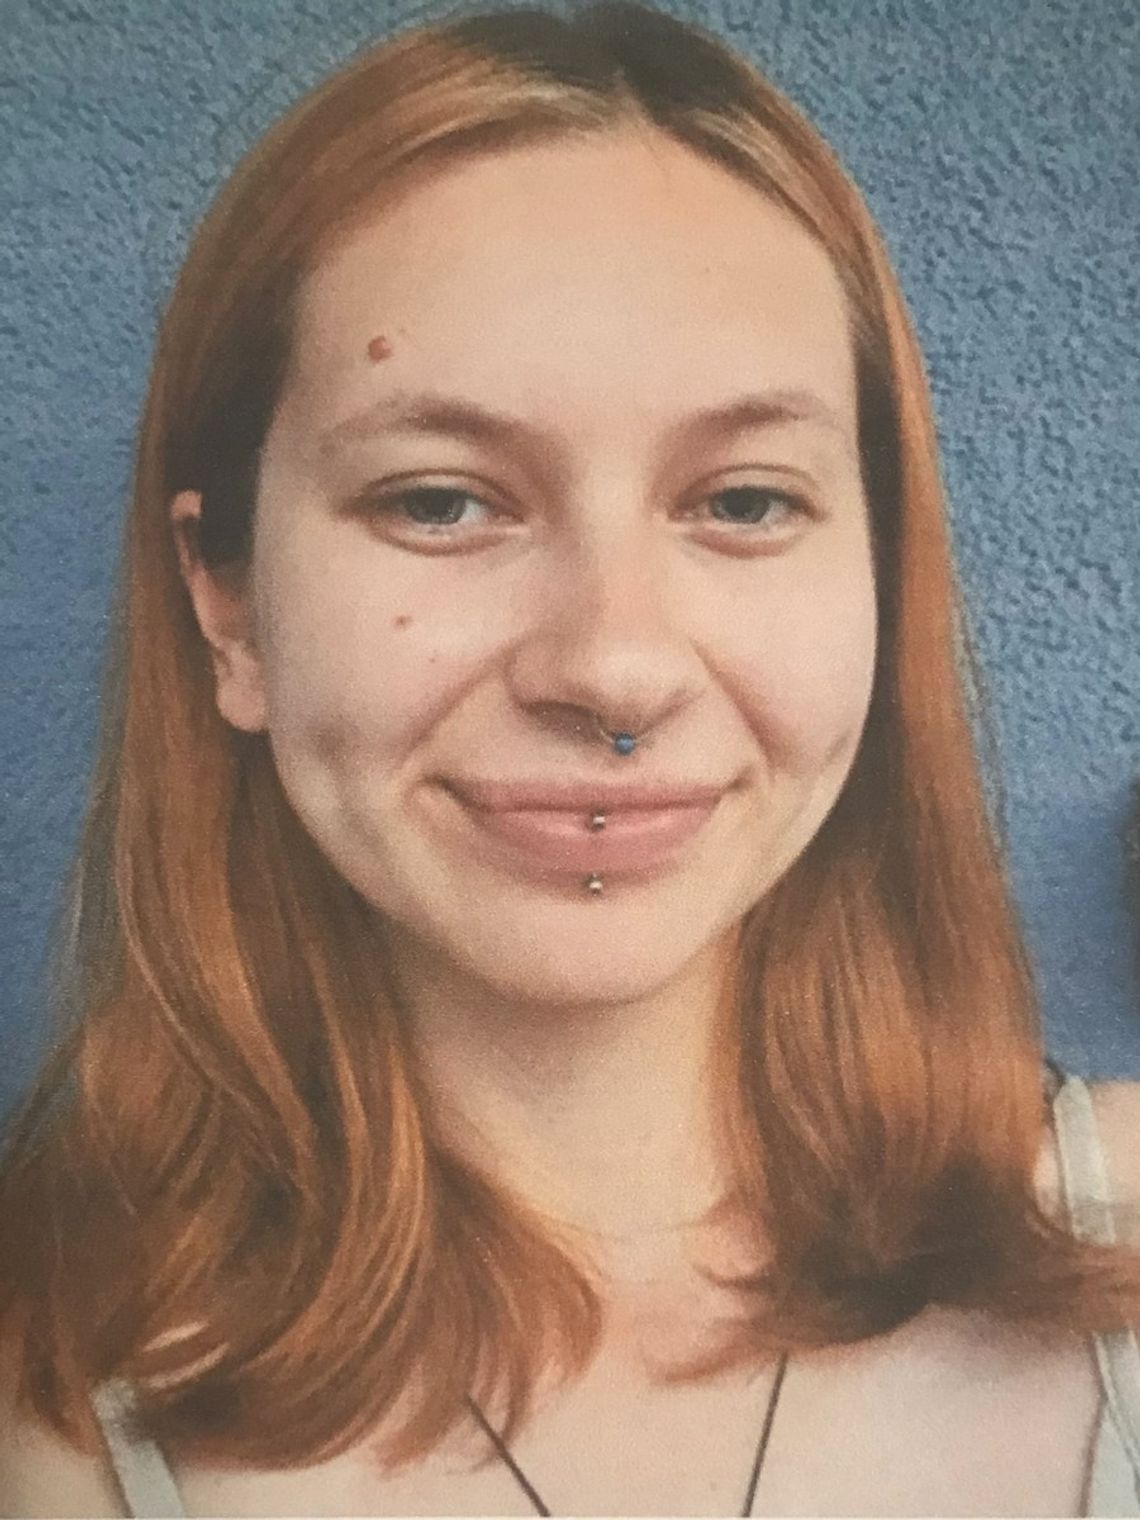 Zaginęła Aneta Szubryt z Wrocławia. 23-latka wyszła z domu w czwartek i od tego czasu nie ma z nią kontaktu